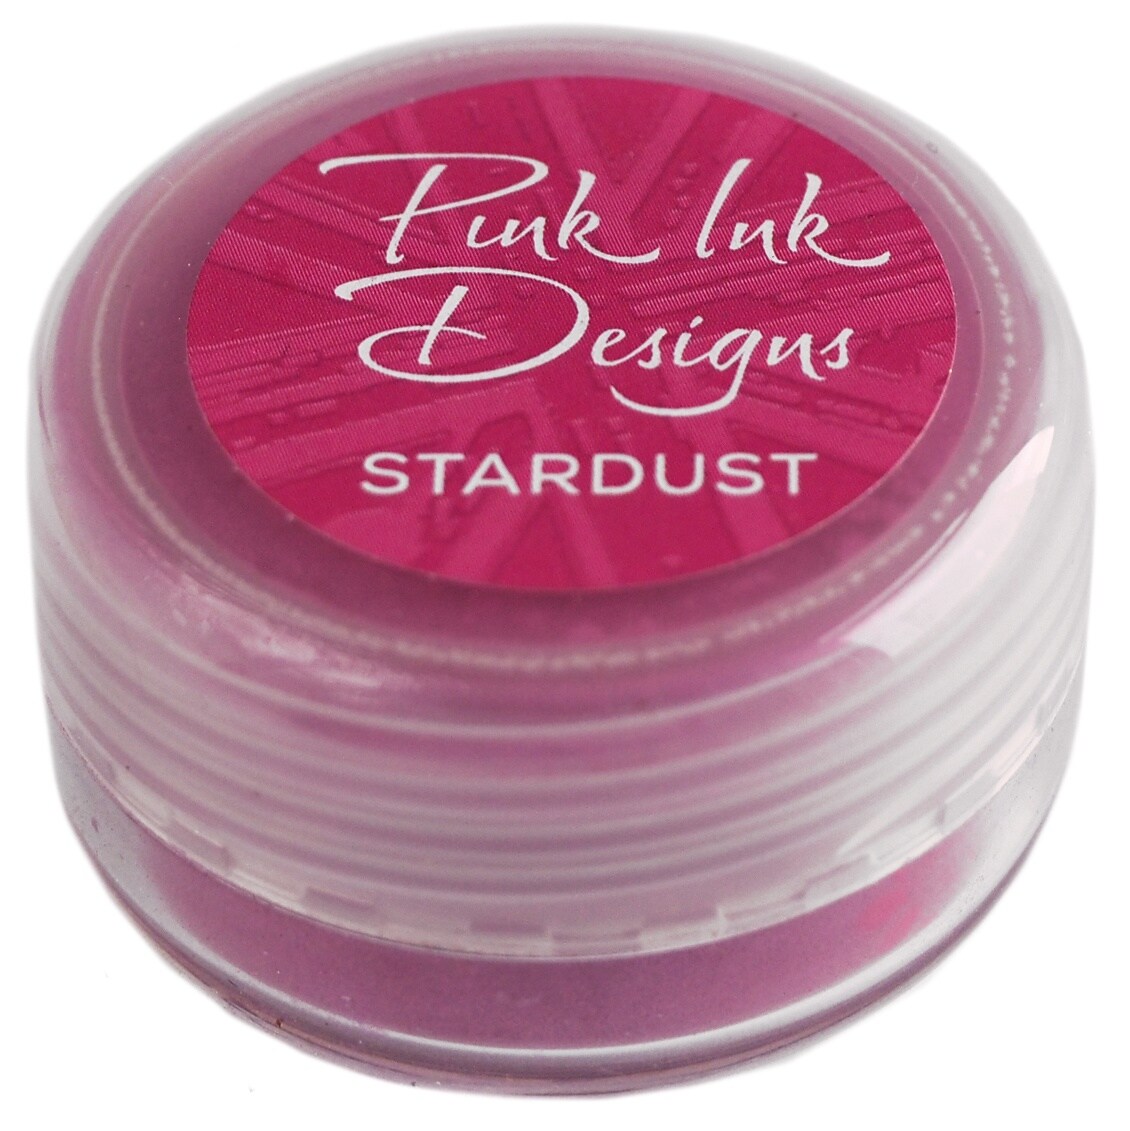 Pink Ink Designs Stardust 10ml-Pink Diamond